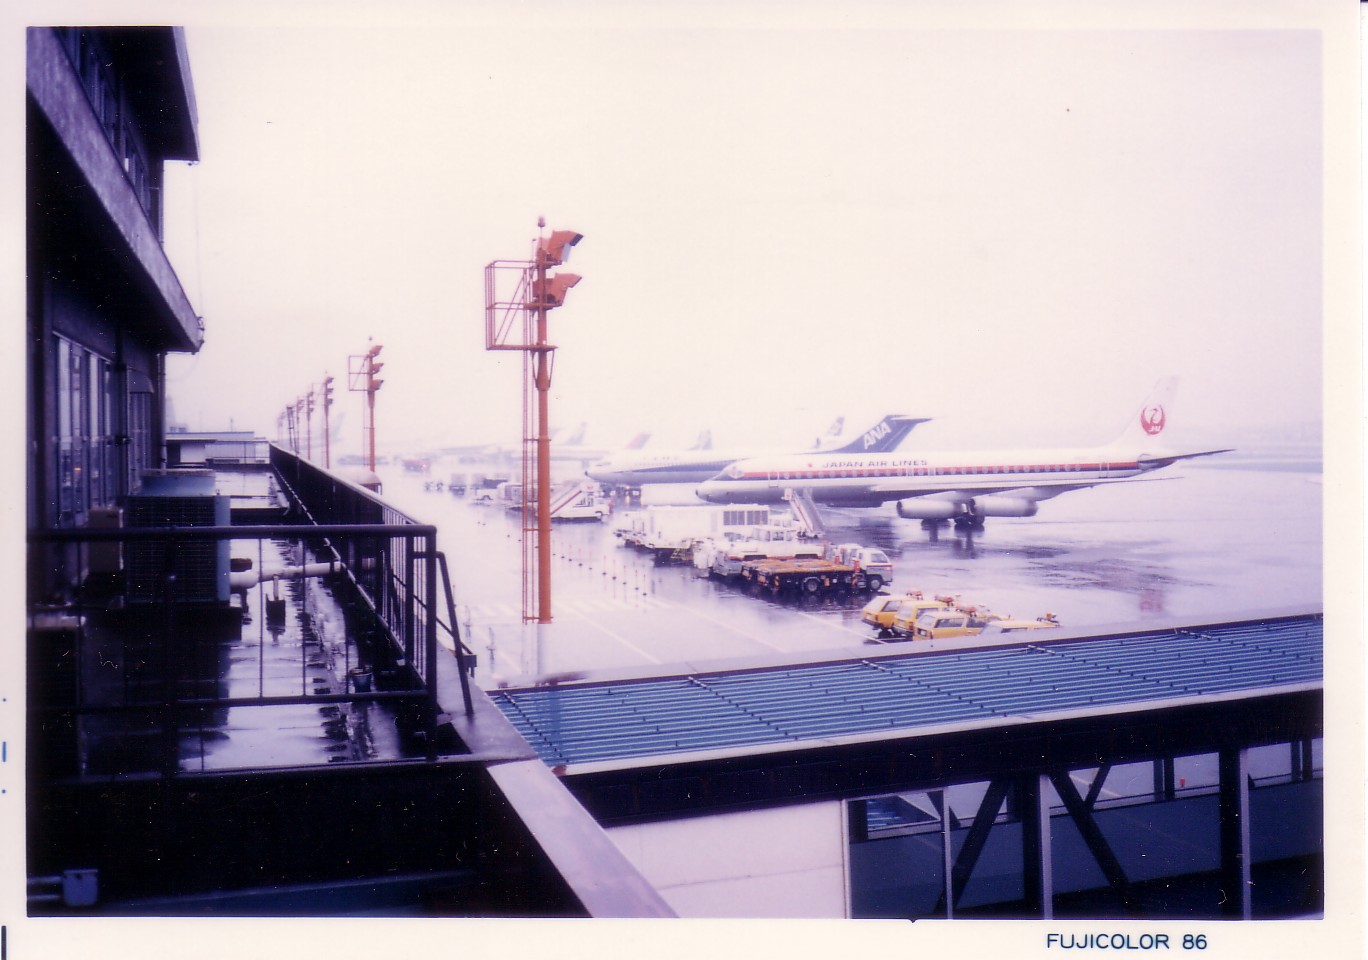 名古屋(小牧)空港で見たJAL機とキャセイパシフィック航空機(...